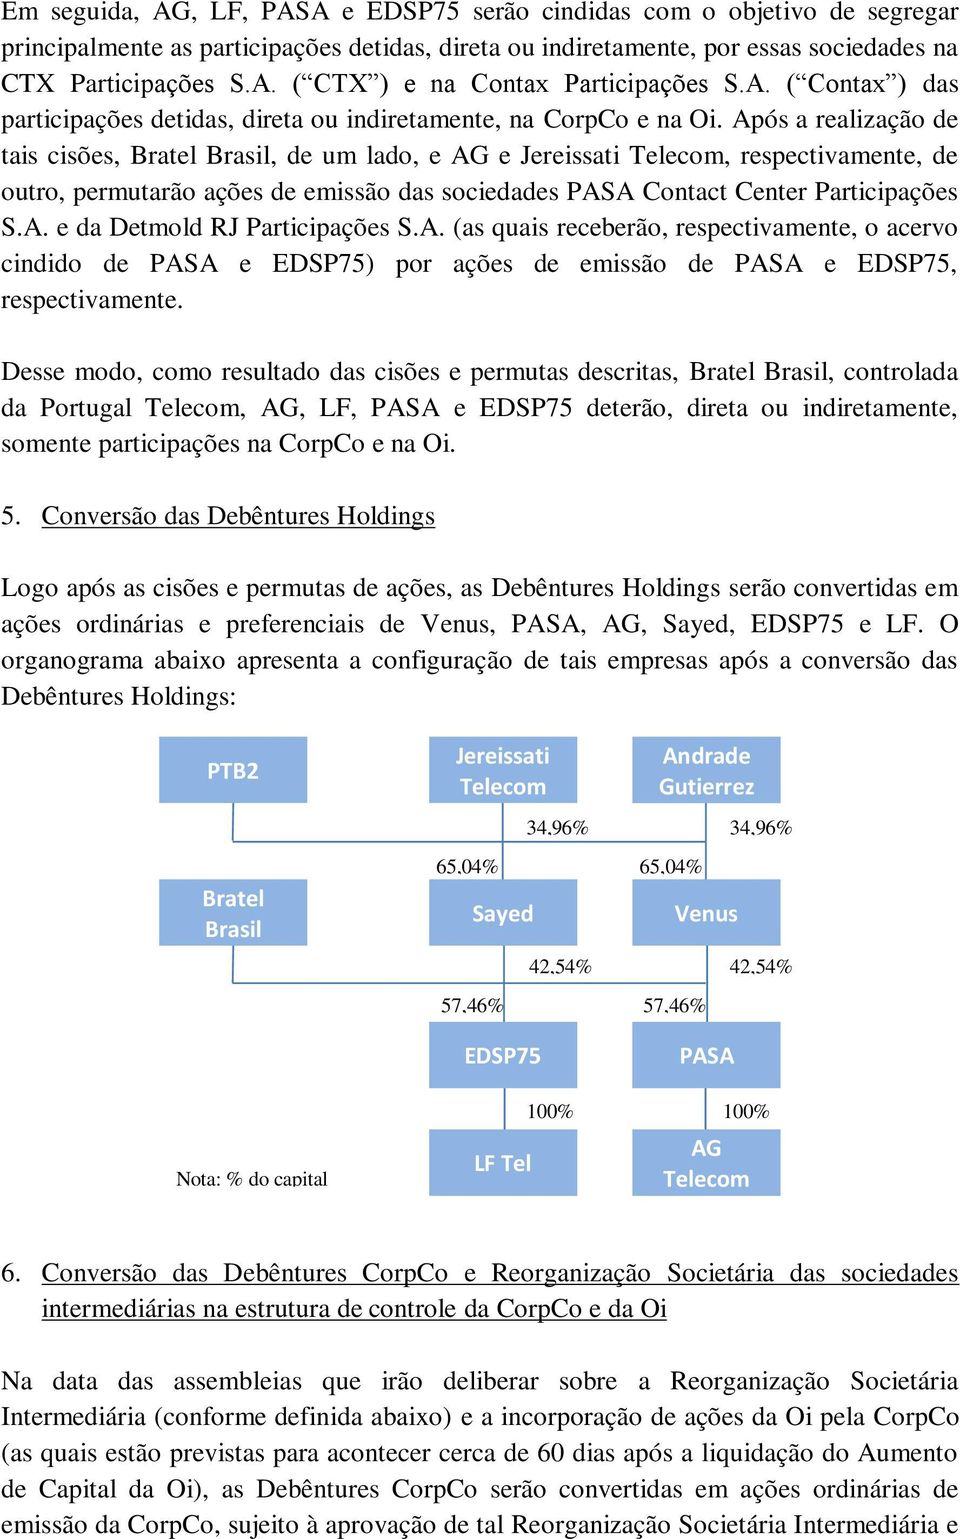 Após a realização de tais cisões, Brasil, de um lado, e AG e Jereissati, respectivamente, de outro, permutarão ações de emissão das sociedades PASA Contact Center Participações S.A. e da Detmold RJ Participações S.